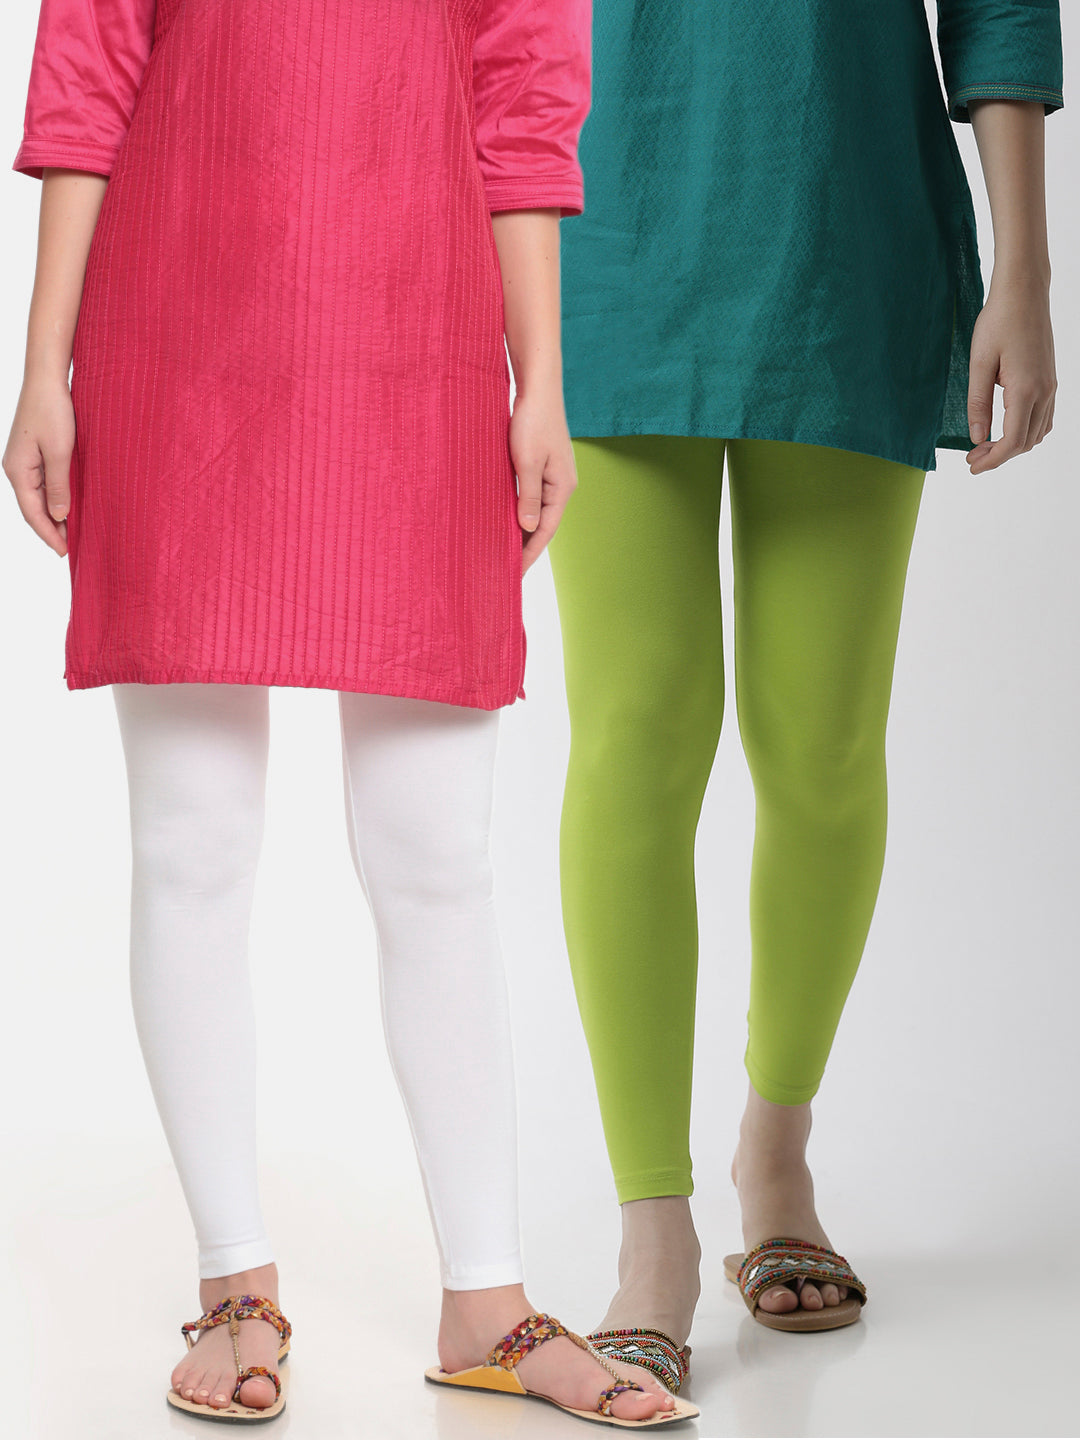 NWOT Baby GAP Legging/ Skirt Combo | Gap leggings, Skirt leggings, Baby gap